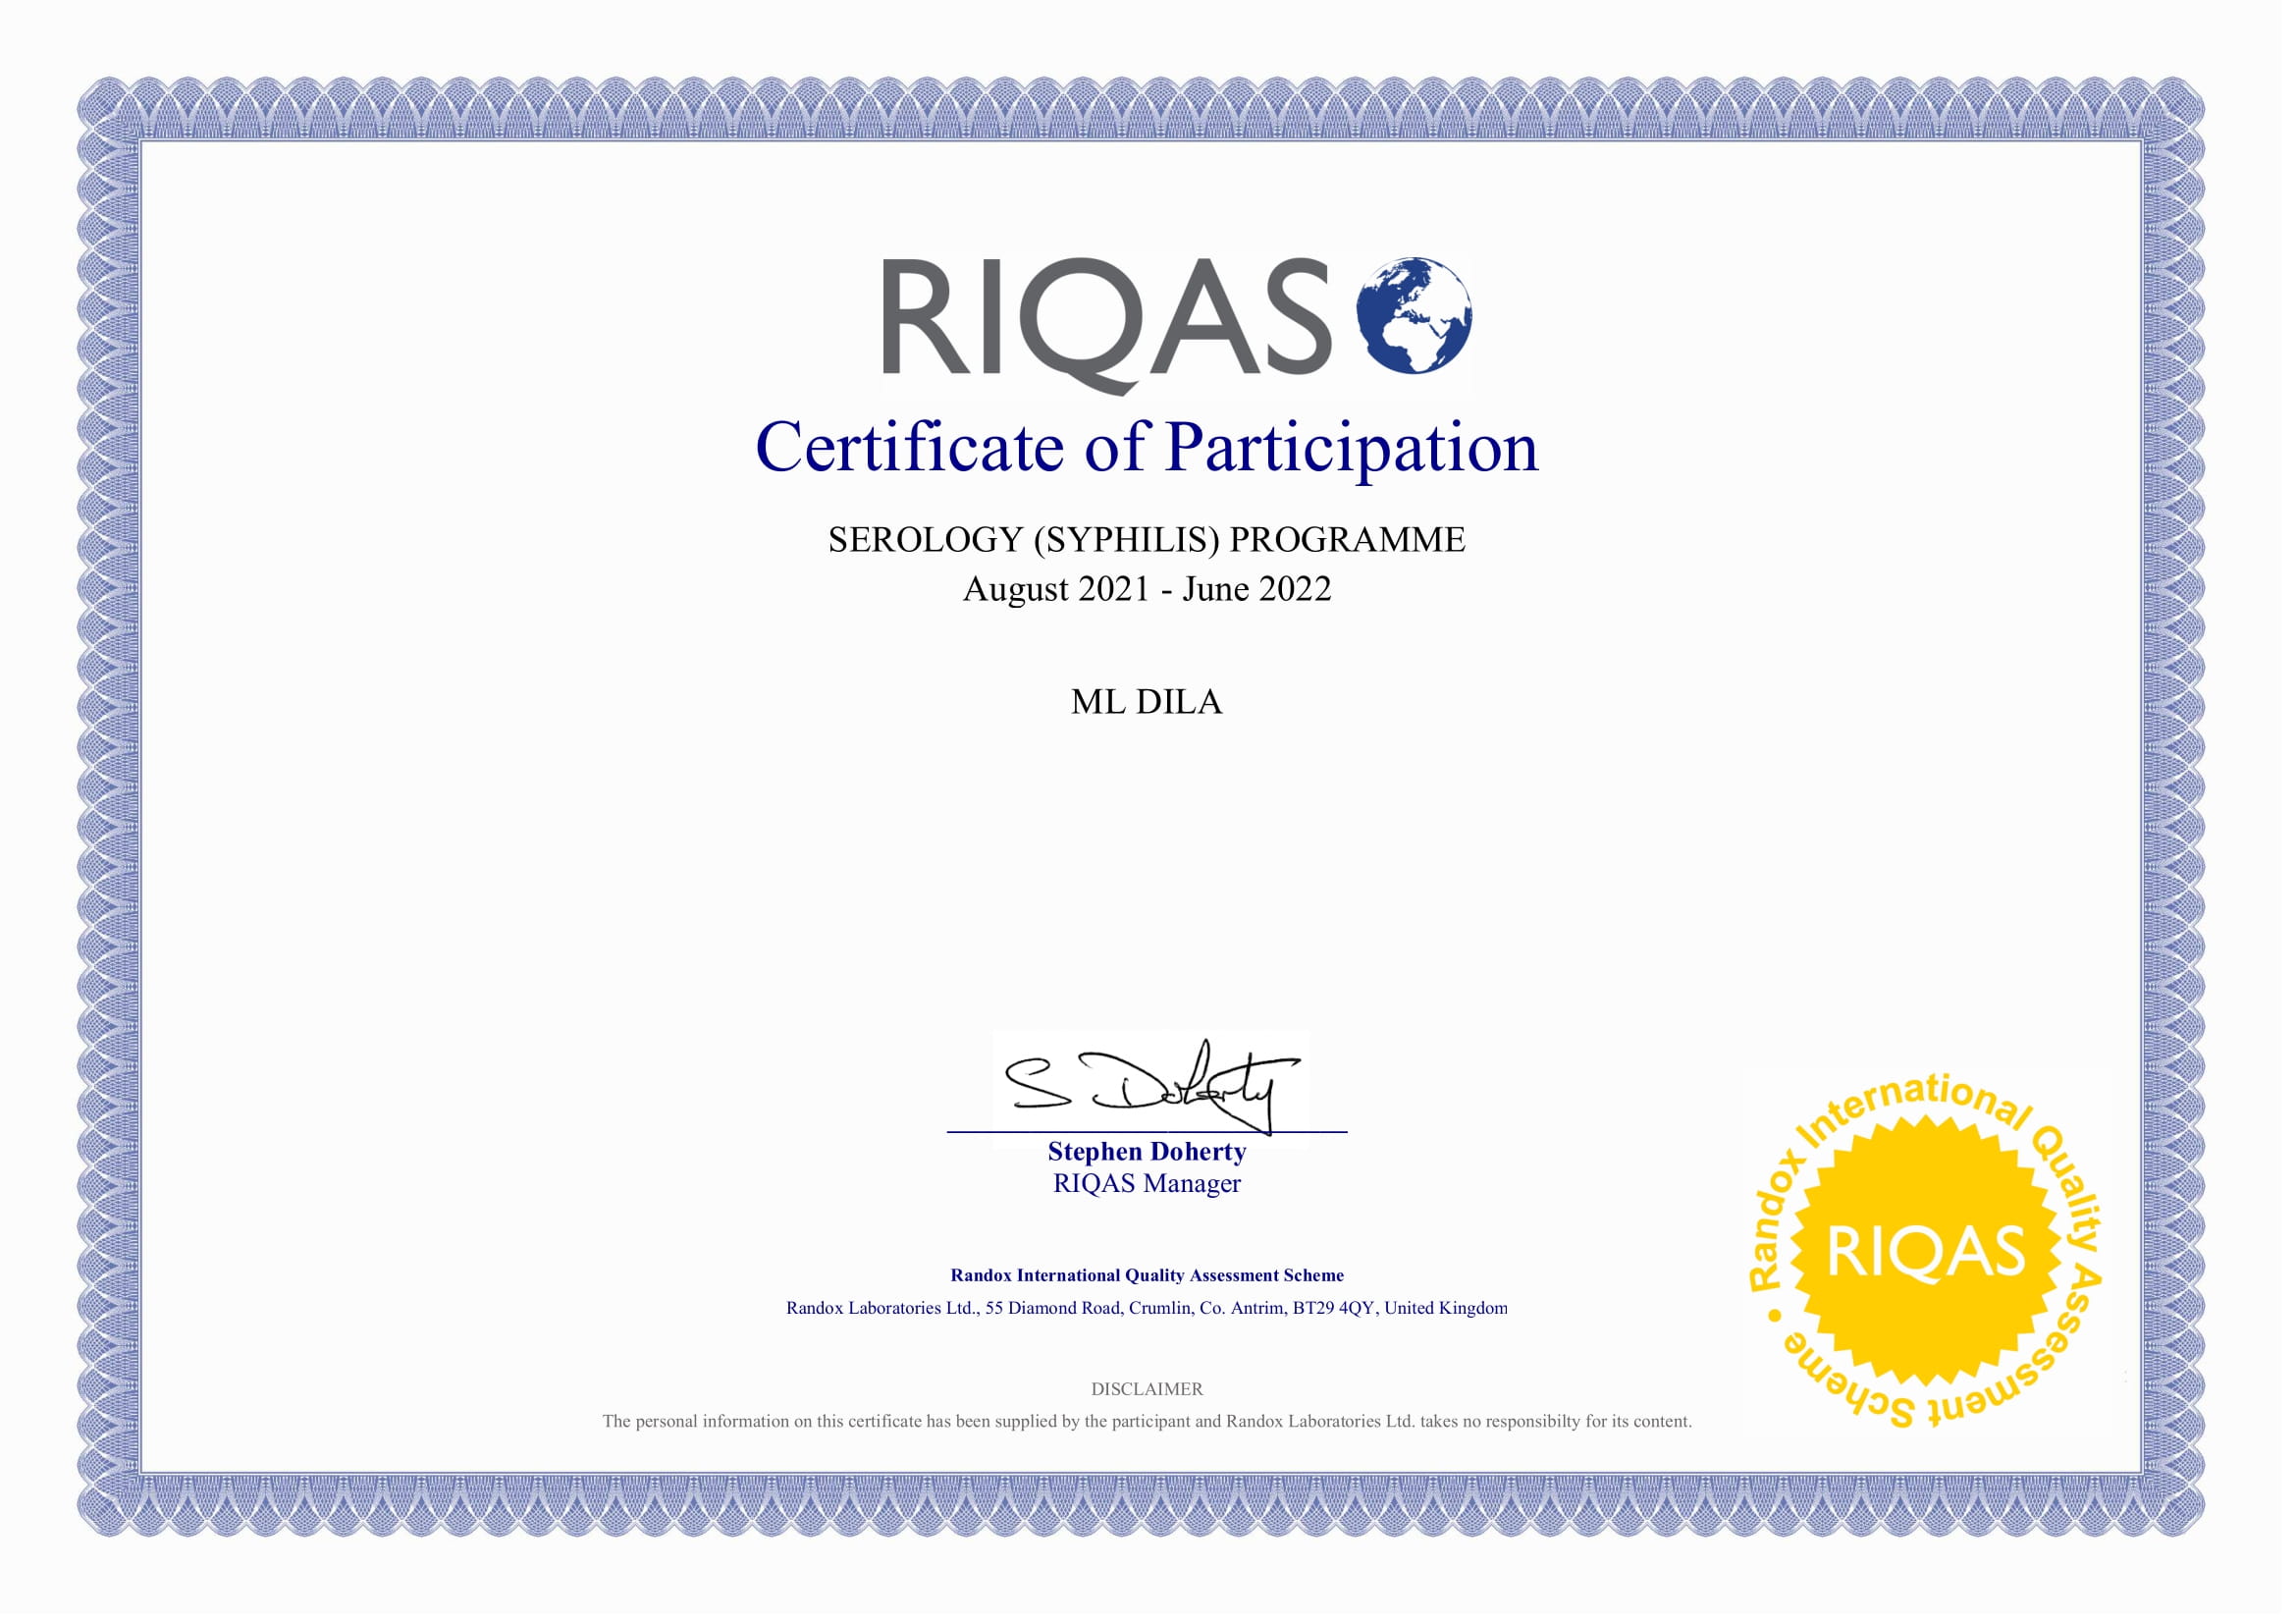 Фото - Сертификат участия в программе внешней оценки качества RIQAS (Серология_Сифилис)